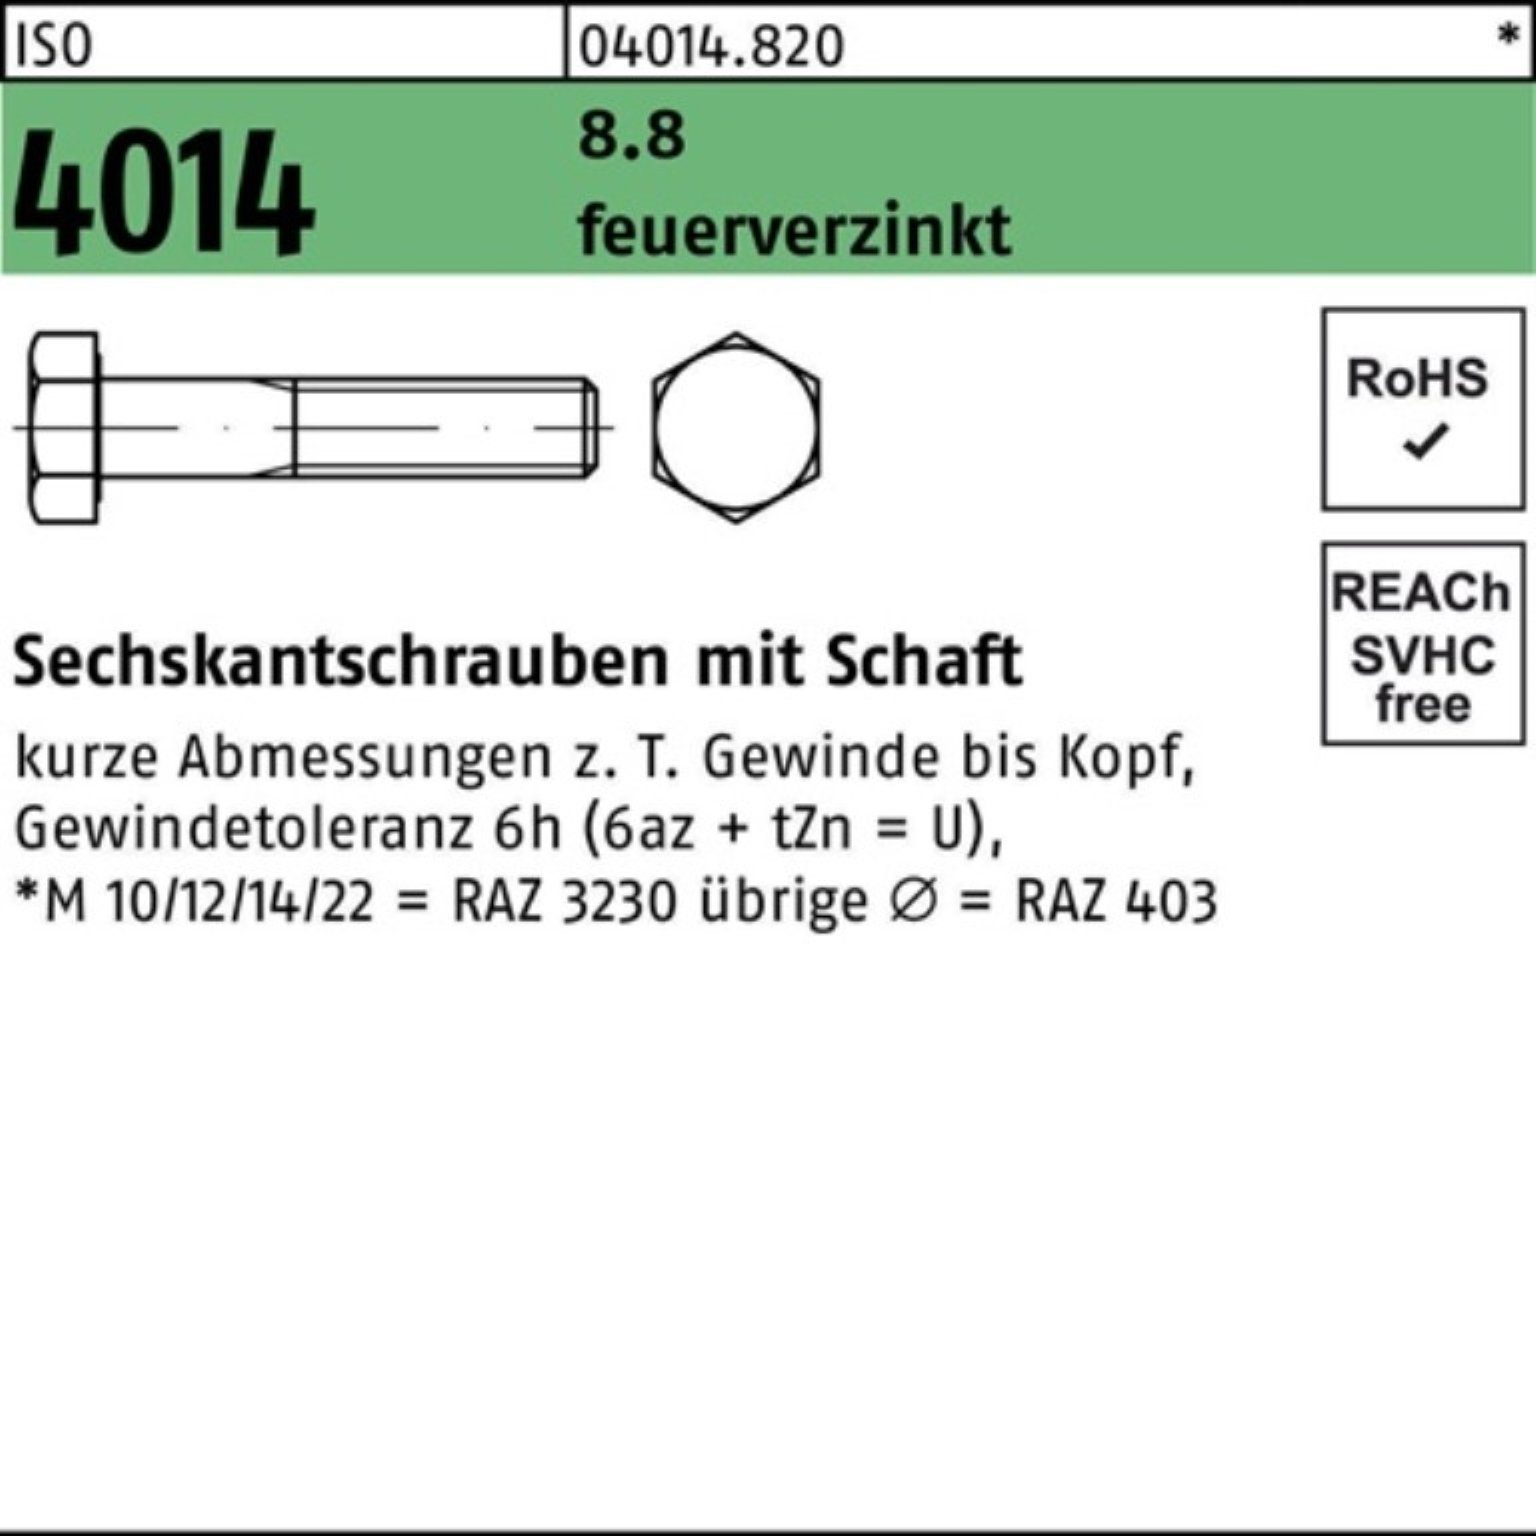 Bufab Sechskantschraube 200er Pack ISO 200 8.8 Sechskantschraube 45 4014 feuerverz. Schaft M8x